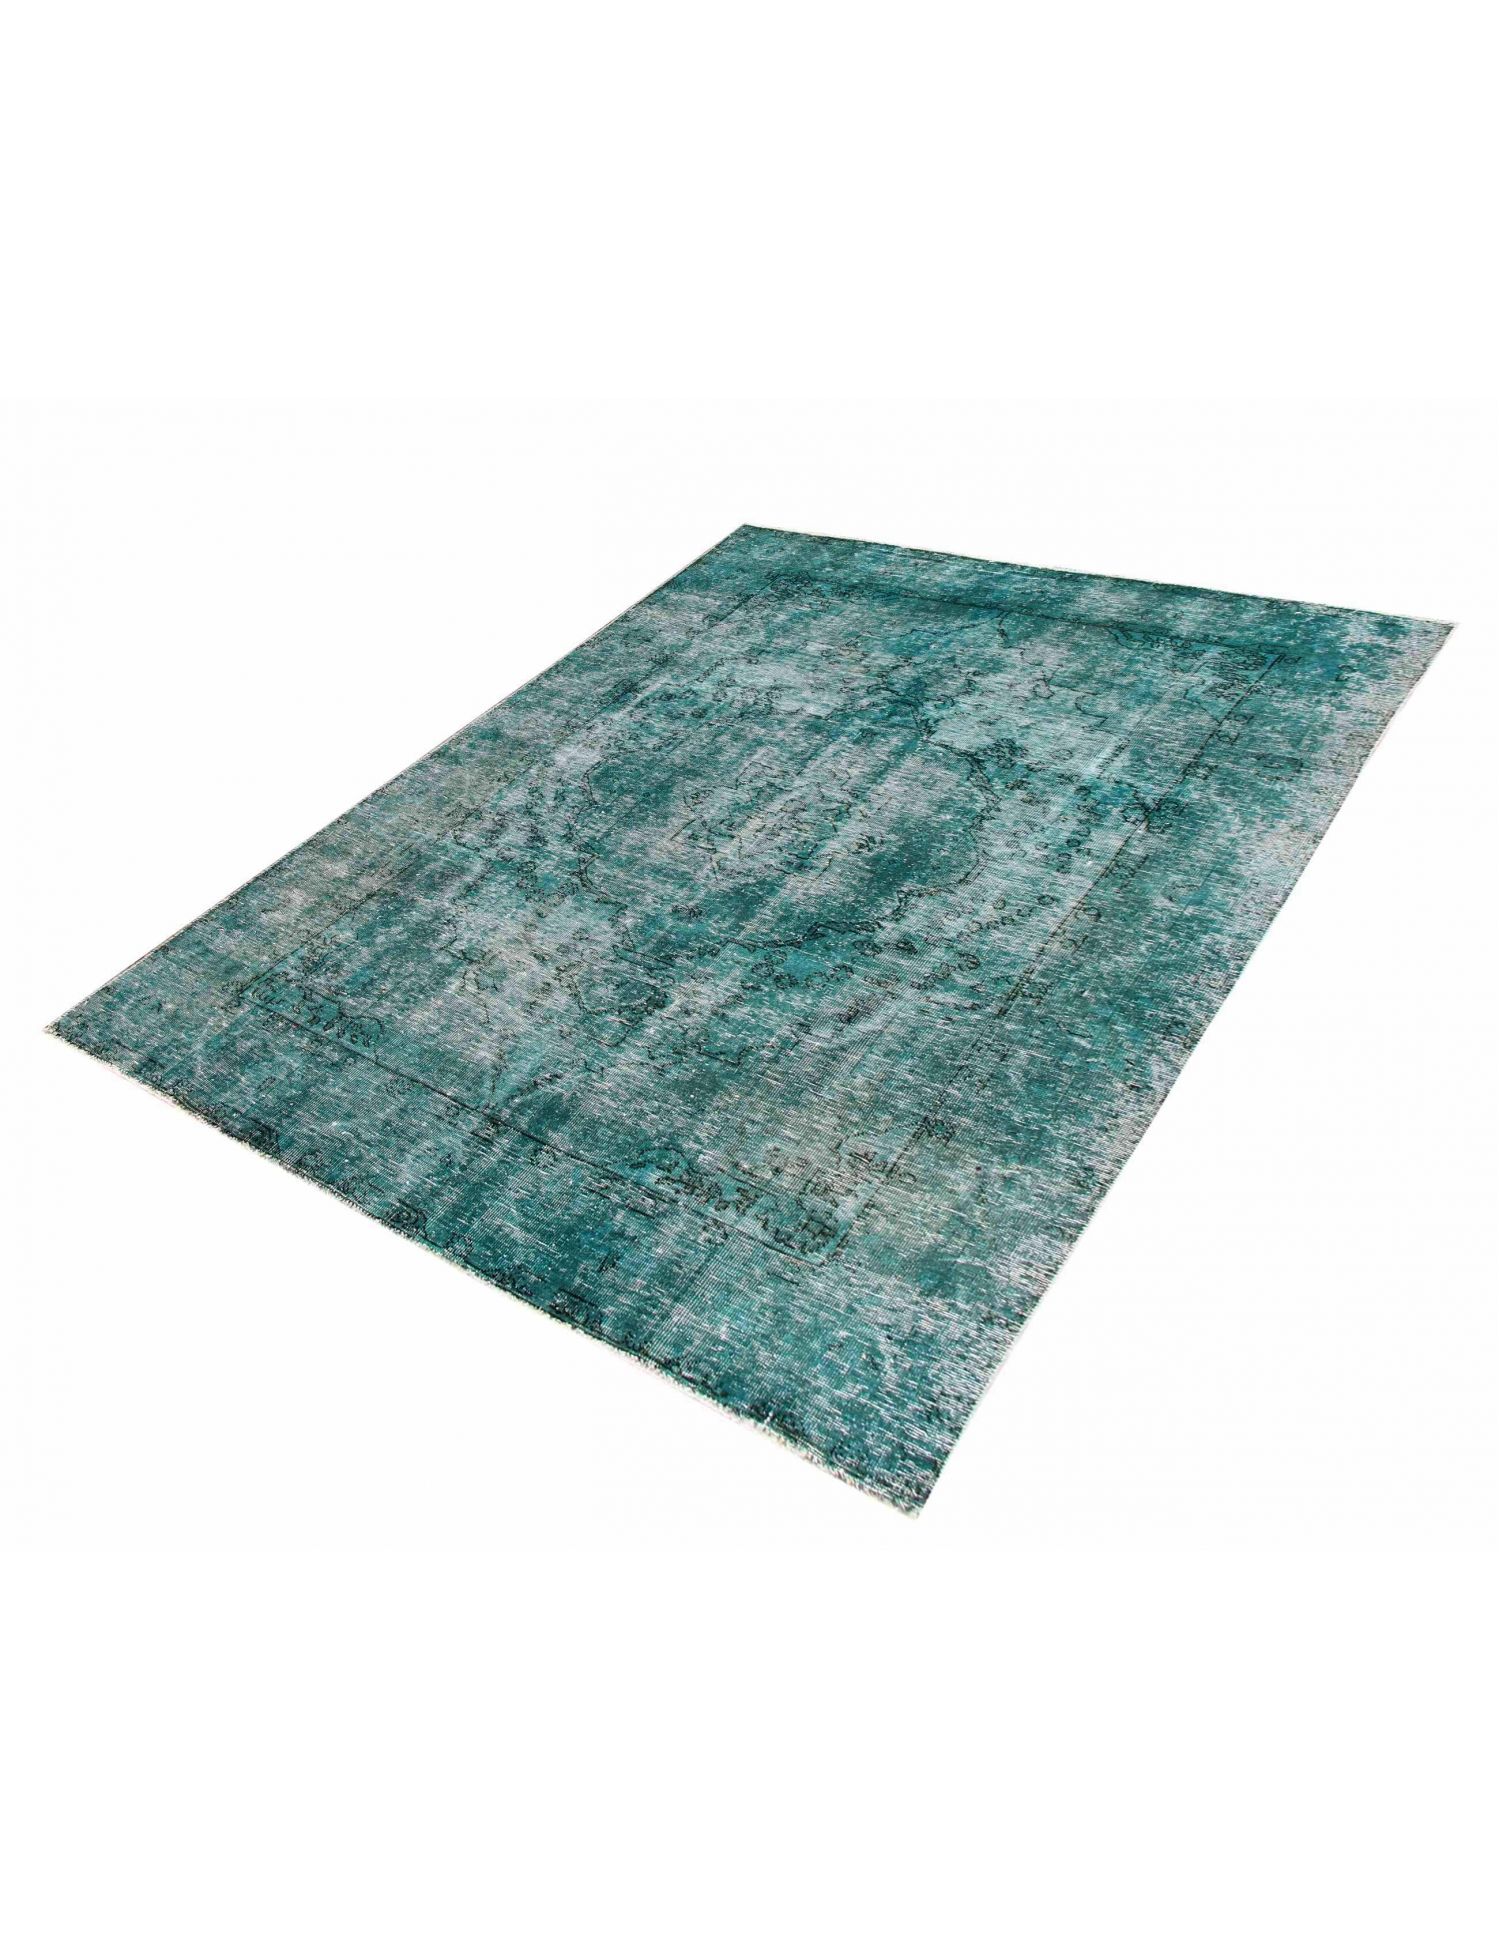 Persischer Vintage Teppich  türkis <br/>280 x 200 cm